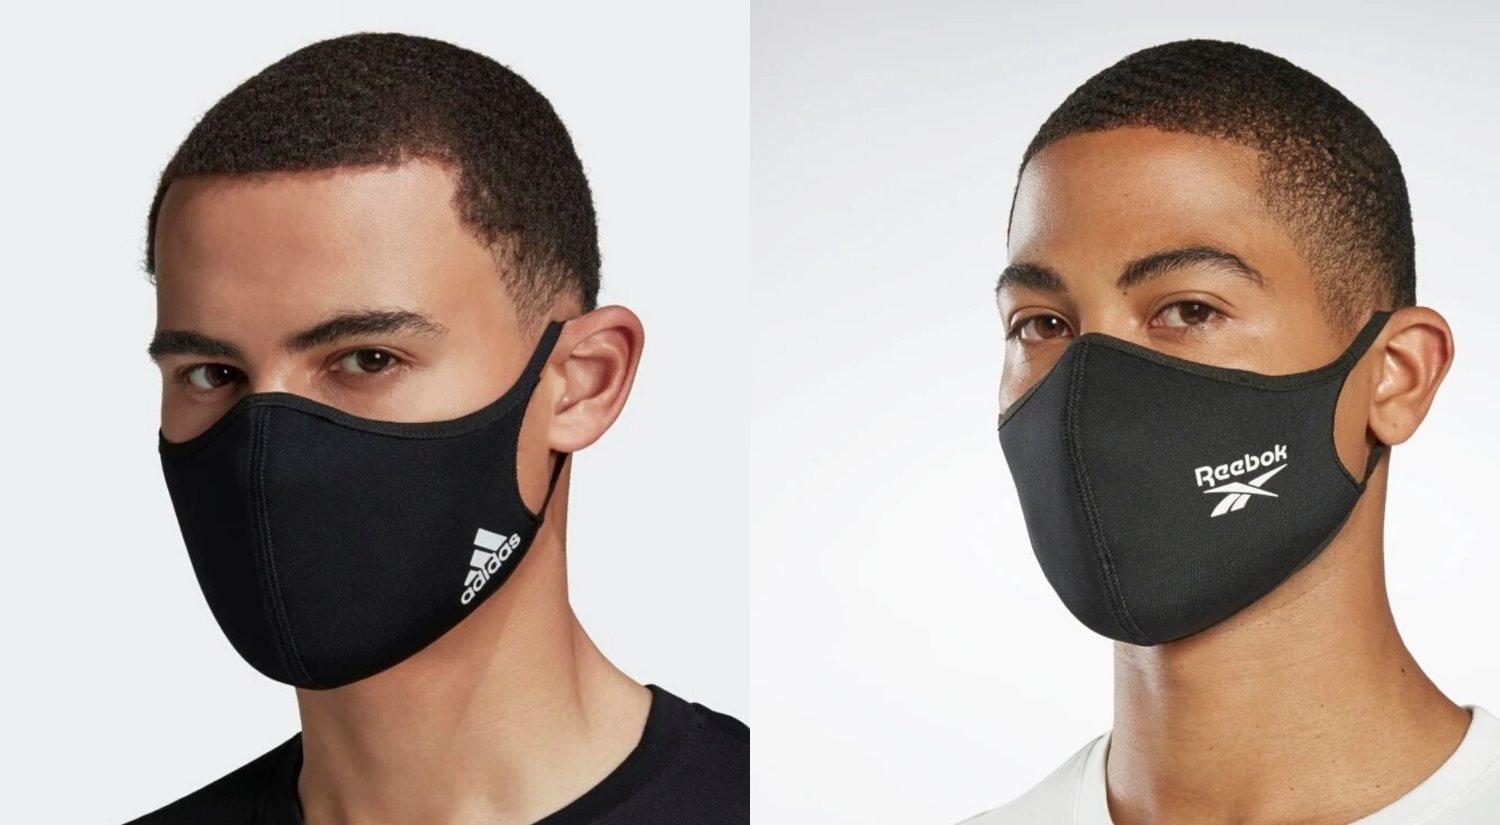 Adidas y Reebok lanzan mascarillas solidarias para combatir la COVID-19